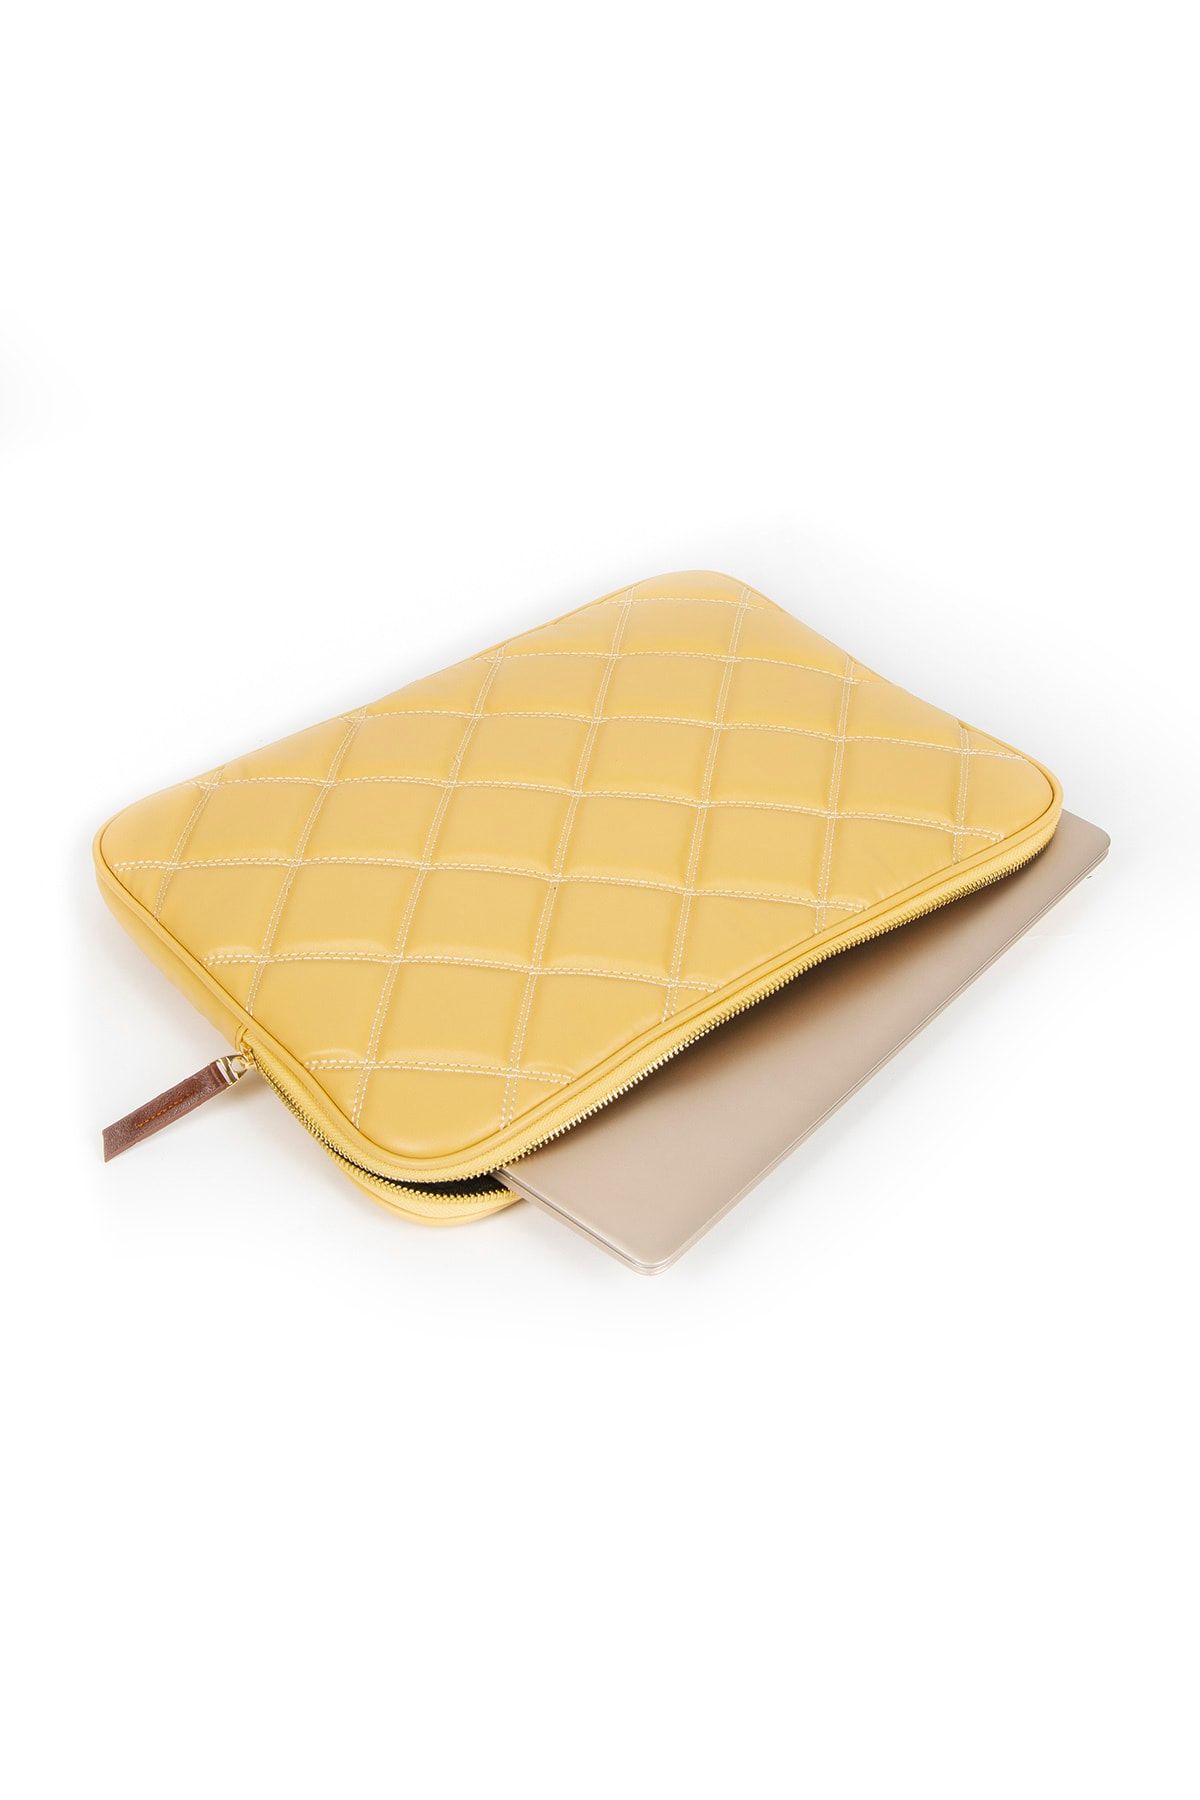 DUOMİNO Sarı Laptop Tablet Kılıfı 14 inç - 16 inç MacBook iPad Pro Air Huawei/Dell/Asus Evrak Çantası